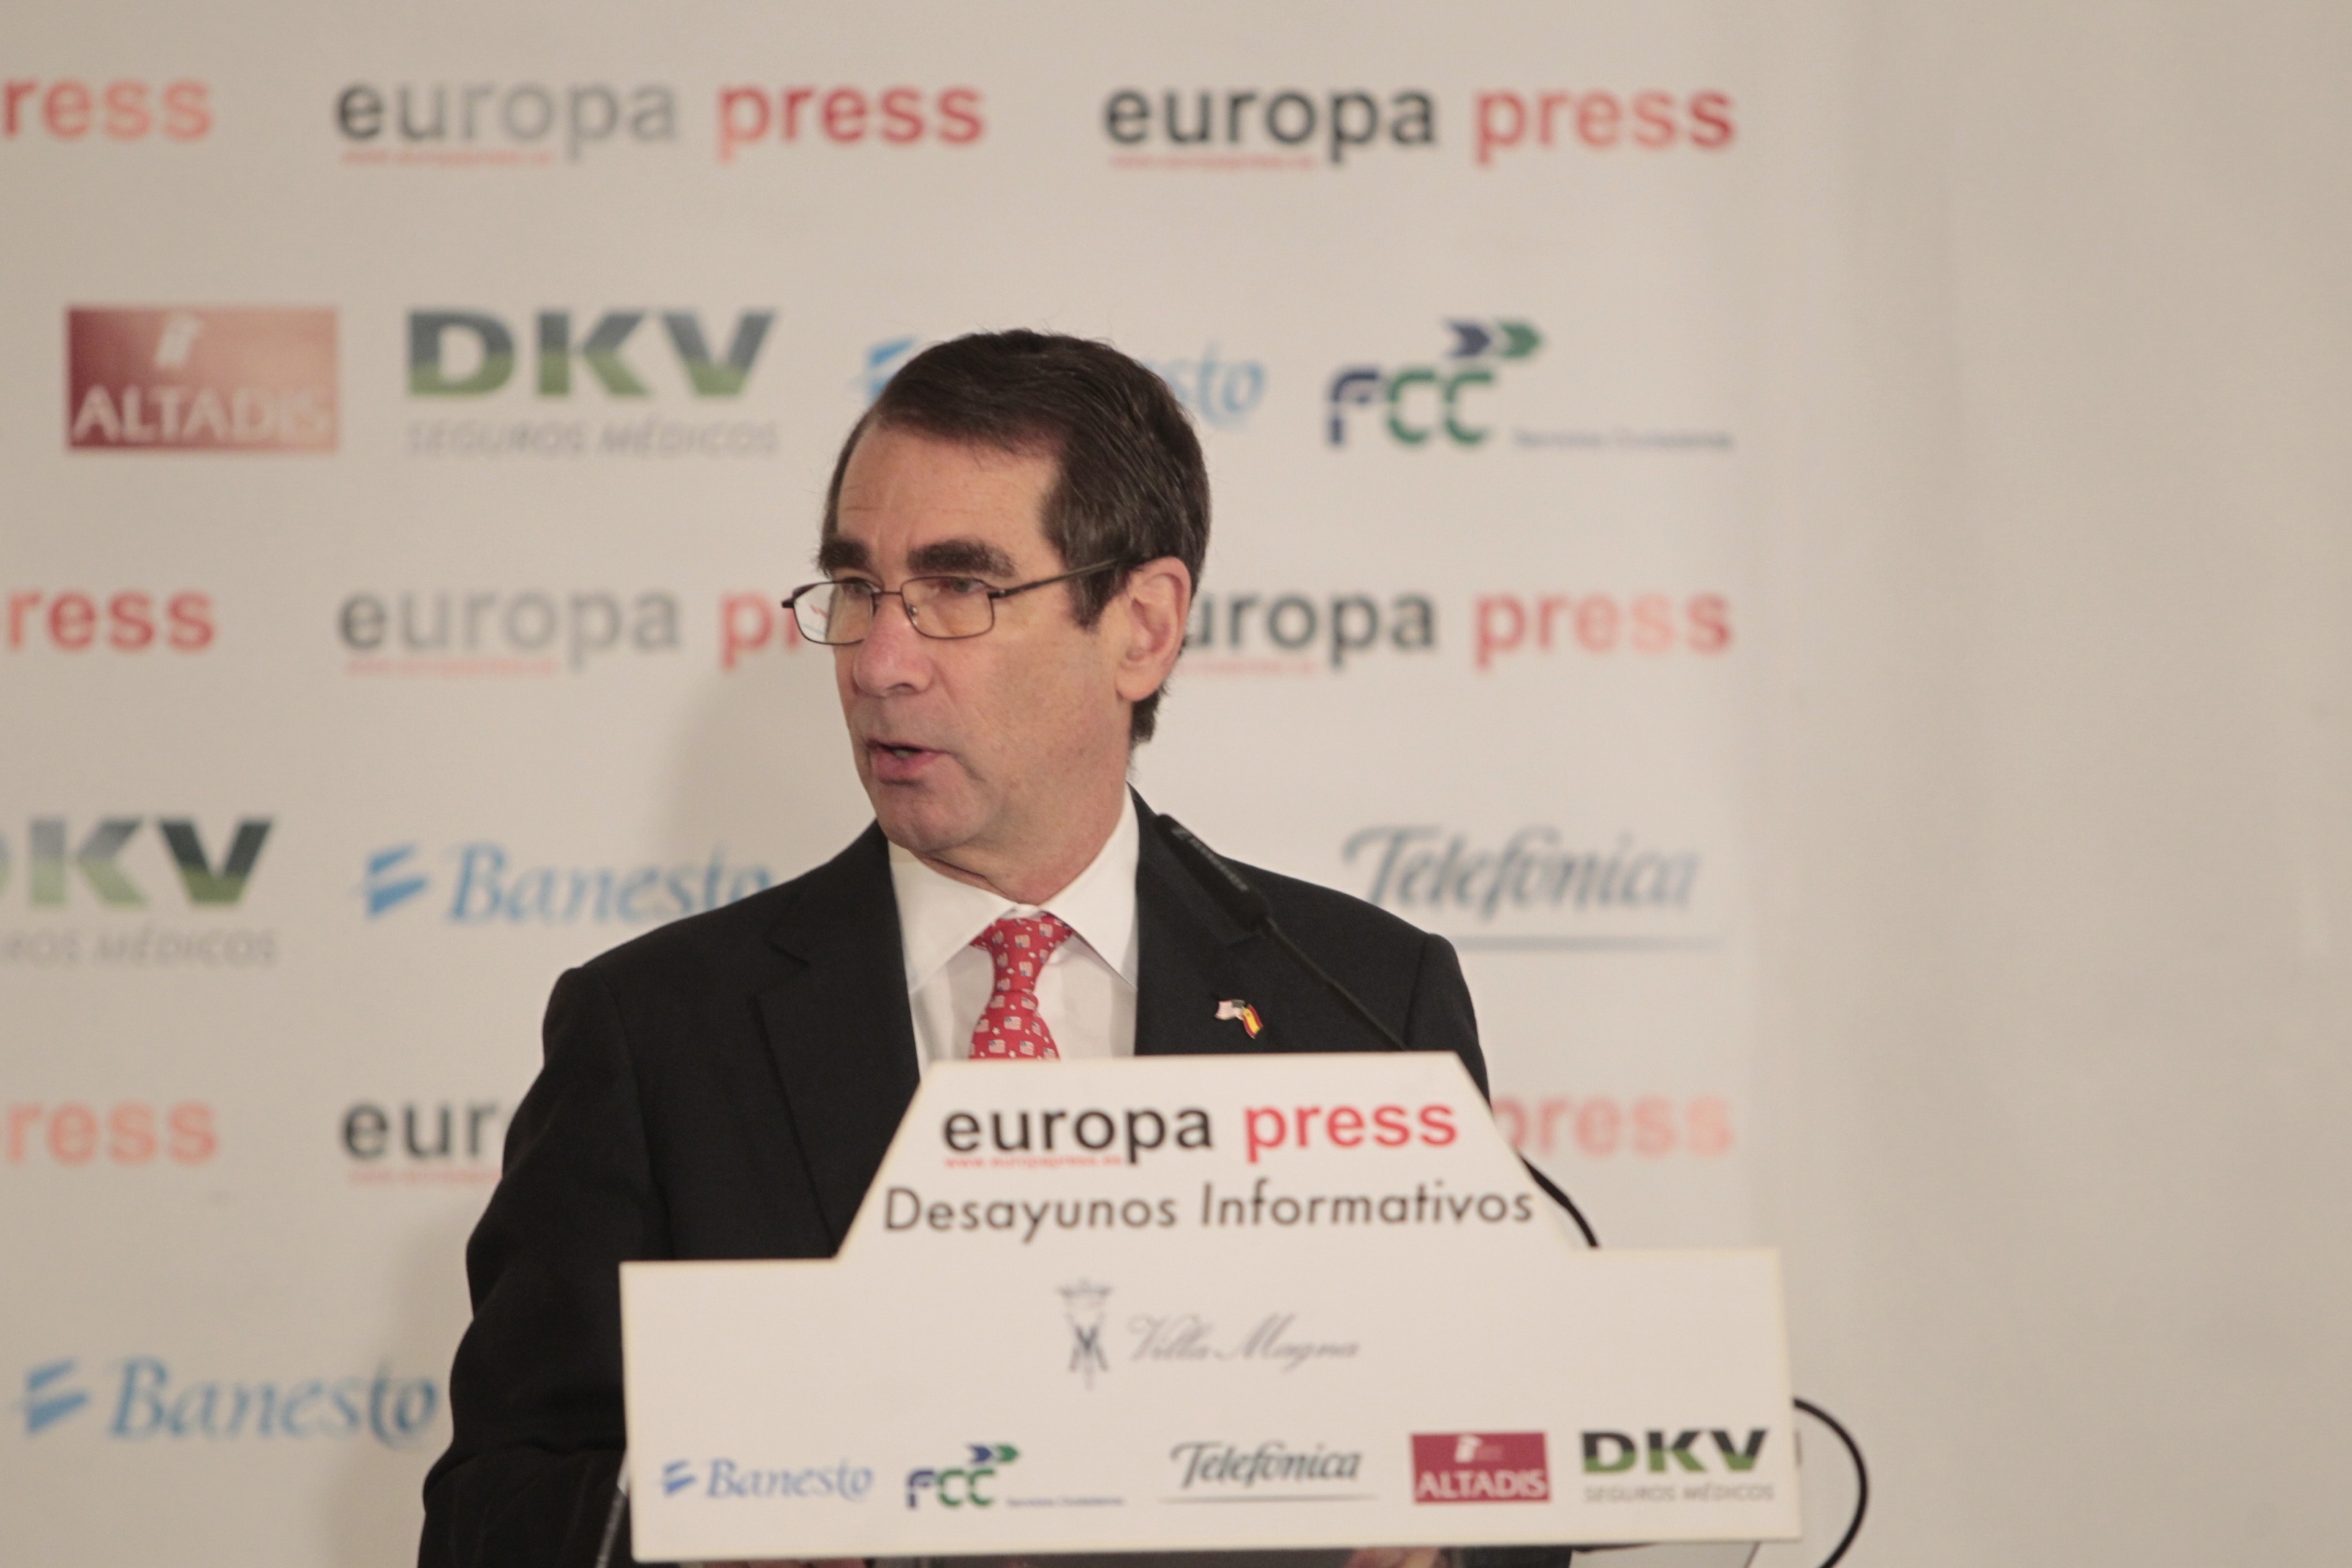 El embajador de EEUU anima a España a hacer reformas para atraer inversión